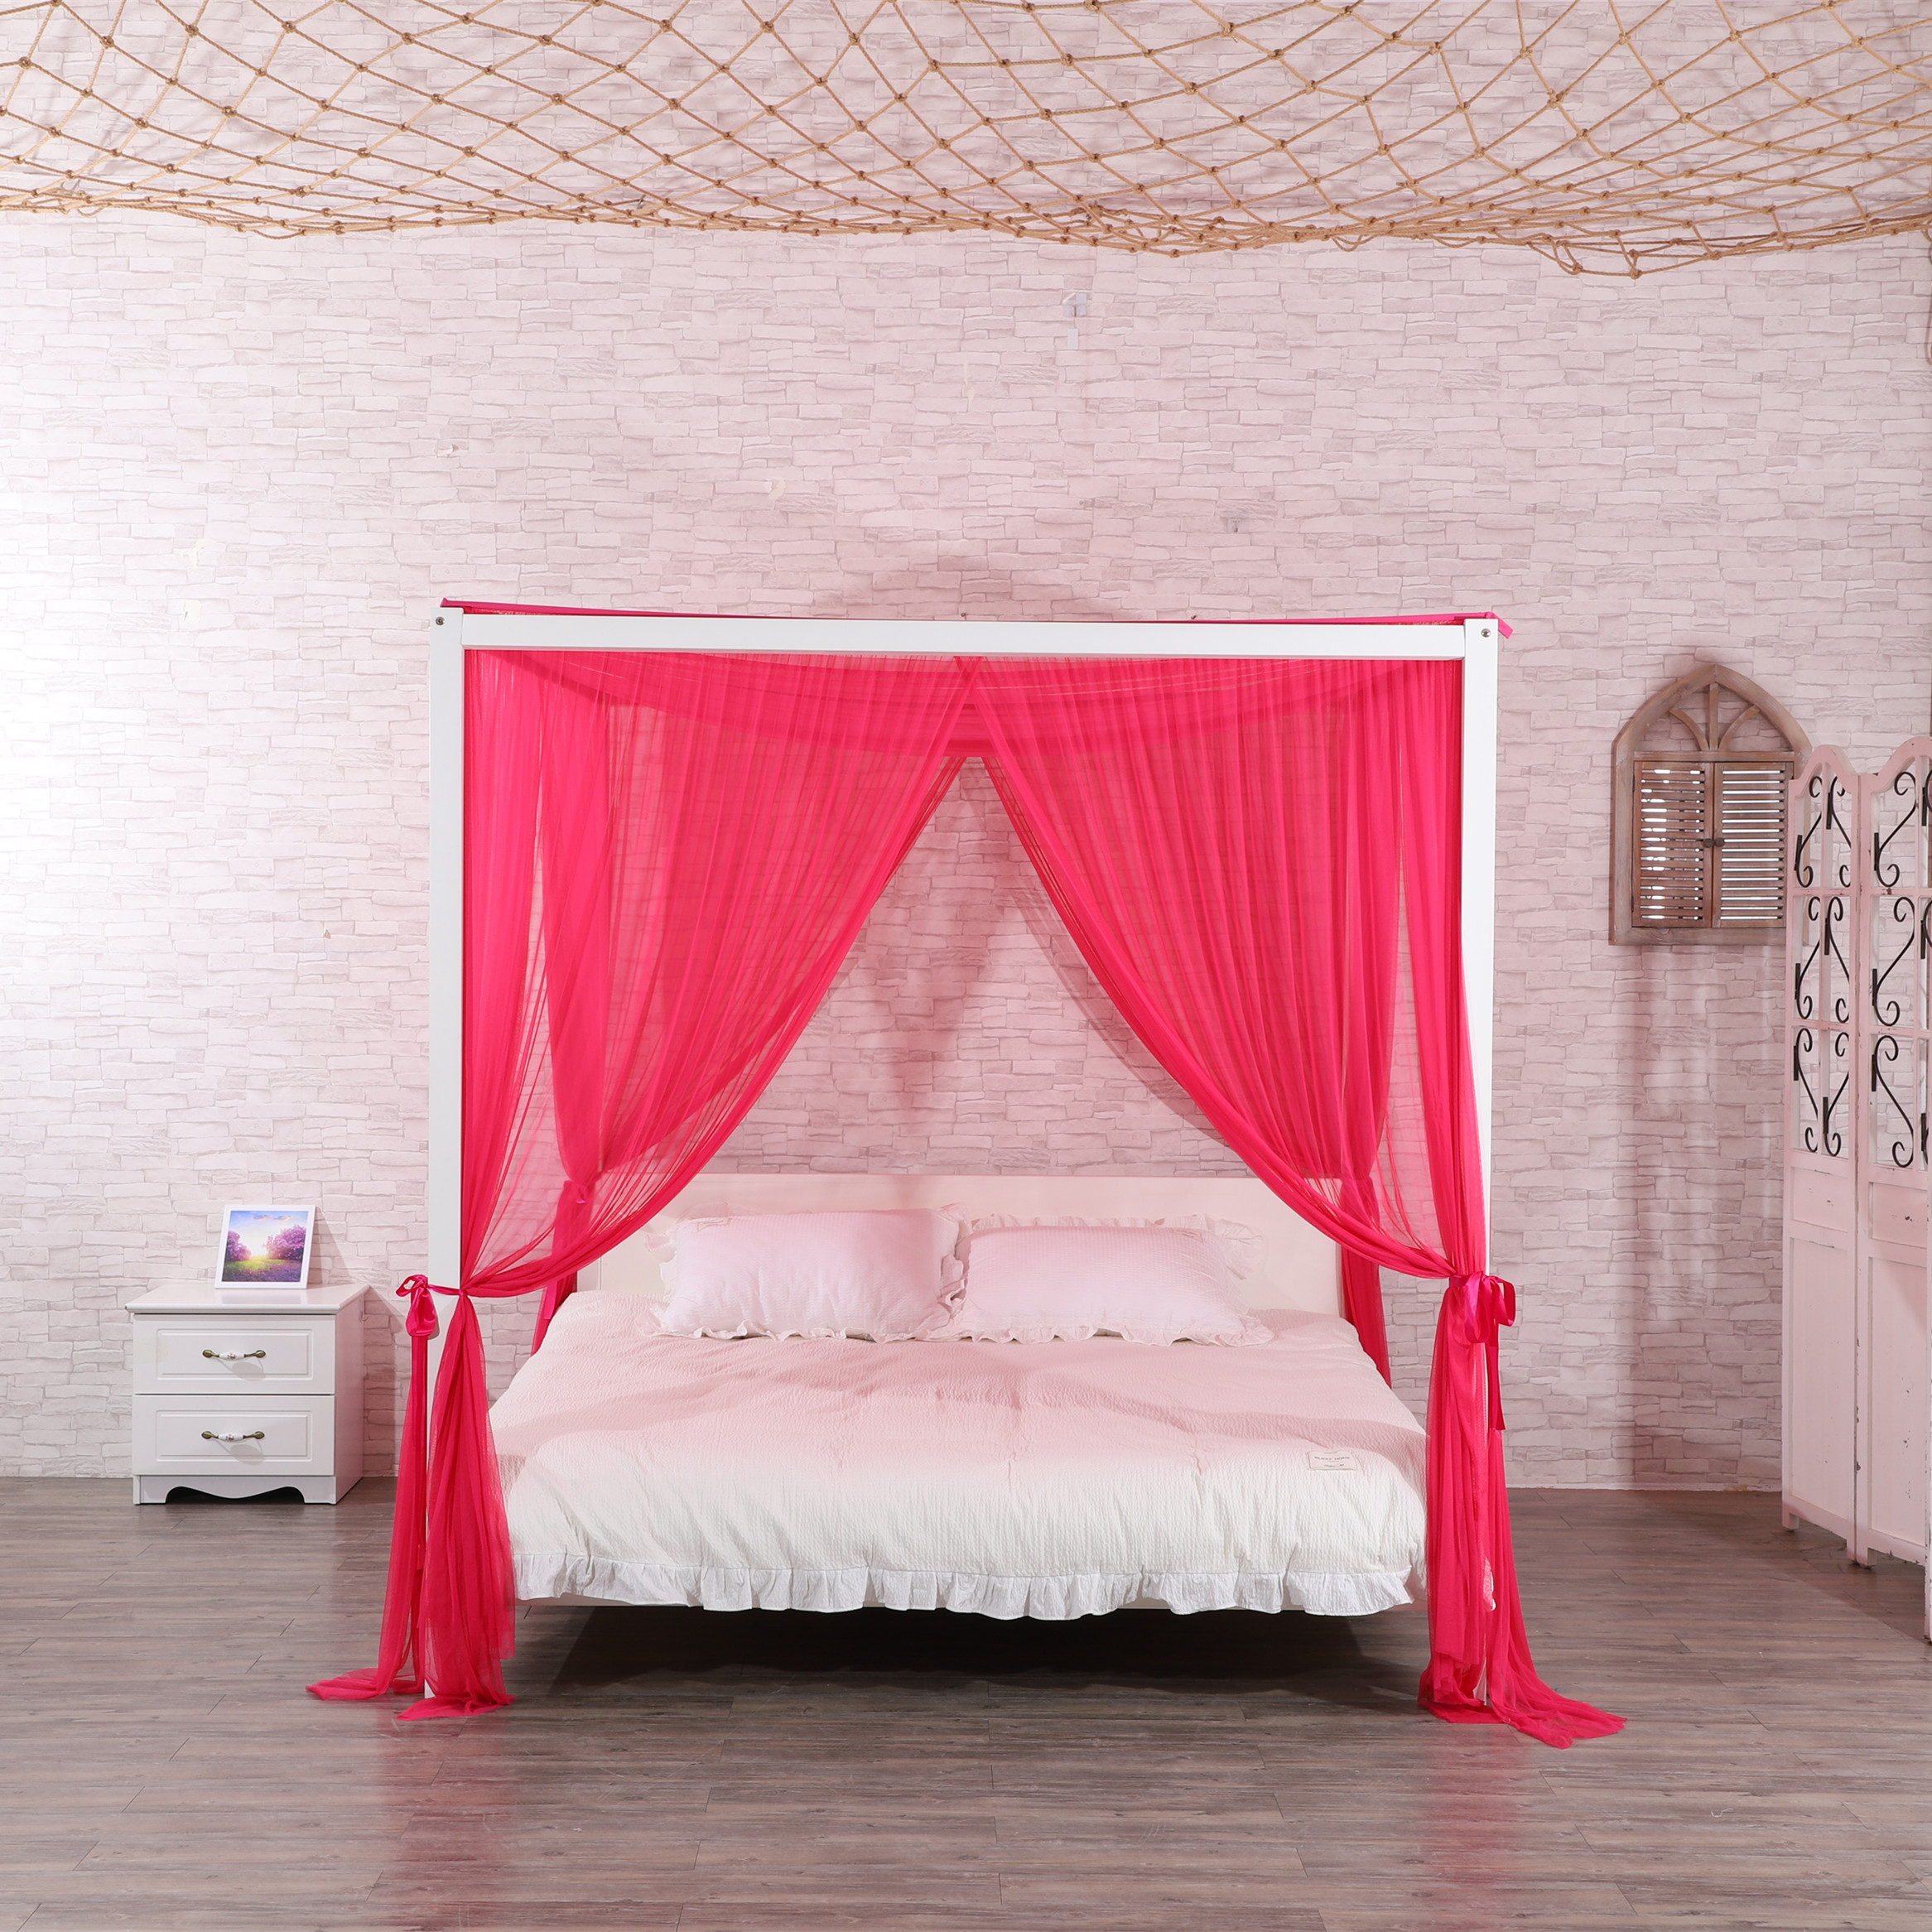 2020 nuevo estilo 100% poliéster de alta calidad forma Rectangular decoración del hogar red de cama doble mosquitera de tamaño King para cama